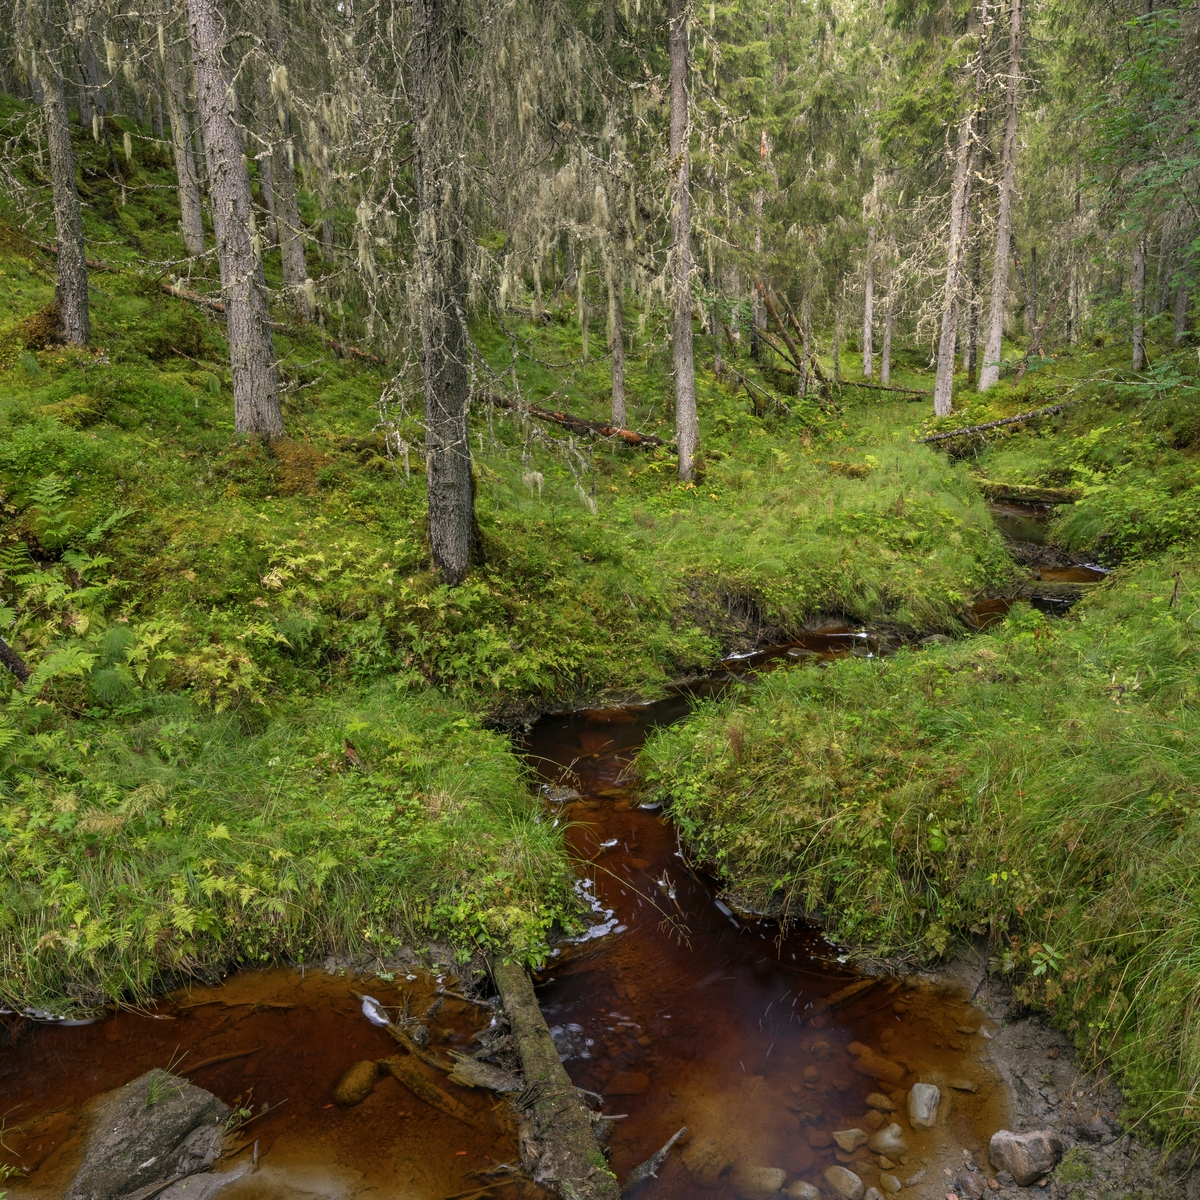 Skogsbekk i gammel granskog. Fra Dølaelva naturreservat, Namsos, Trøndelag. Boreal regnskog som ble vernet i 1992. Her finnes flere sjeldne og utryddingstruede lavarter. Naturtypen finnes kun i kyststrøkene i Trøndelag og sør i Nordland og er internasjonalt truet.